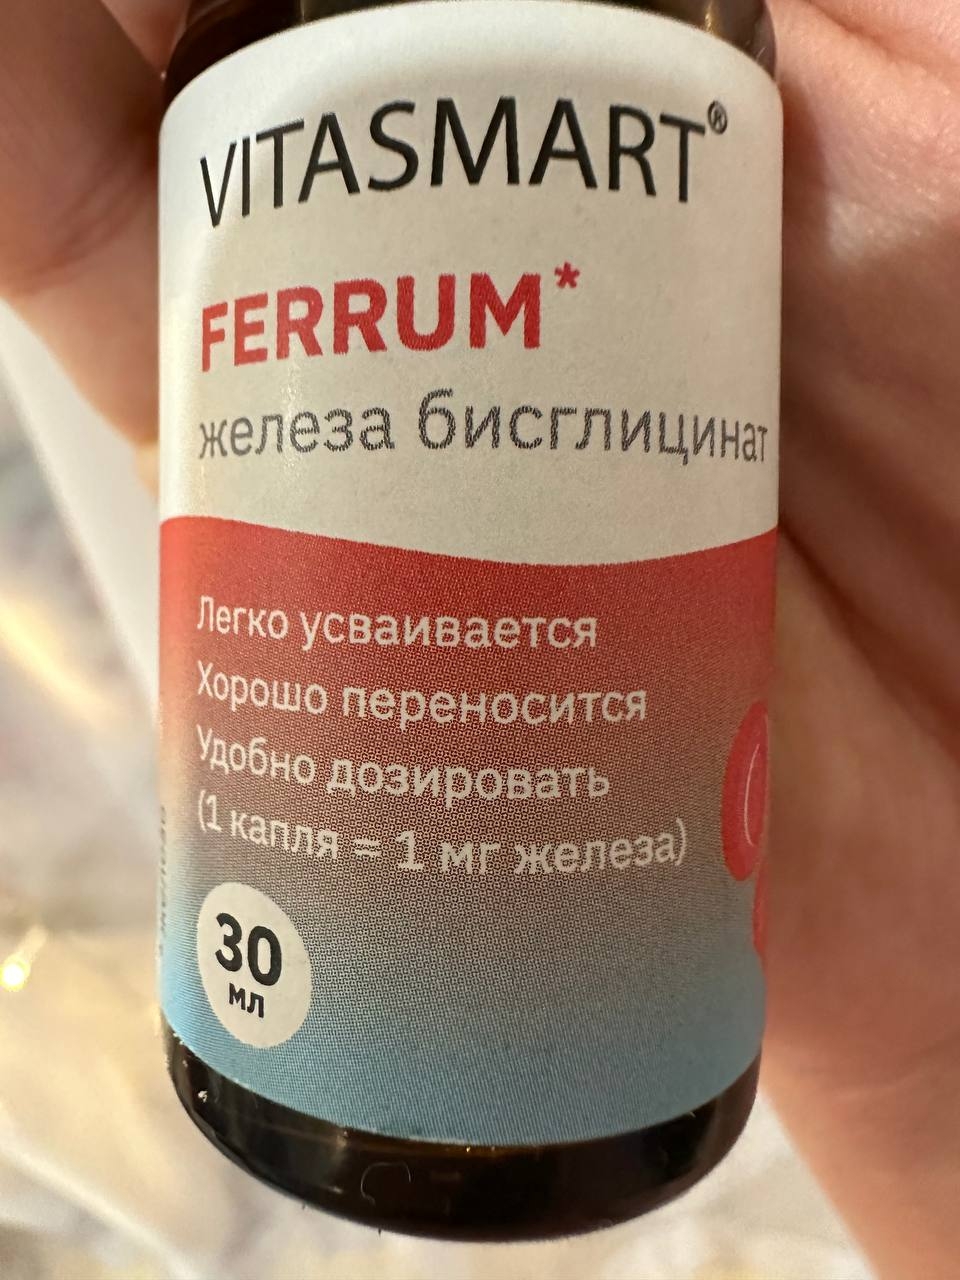 Железо хелат Vitasmart Ferrum, жидкие витамины . - Vitasmart Ferrum - лучшее железо!